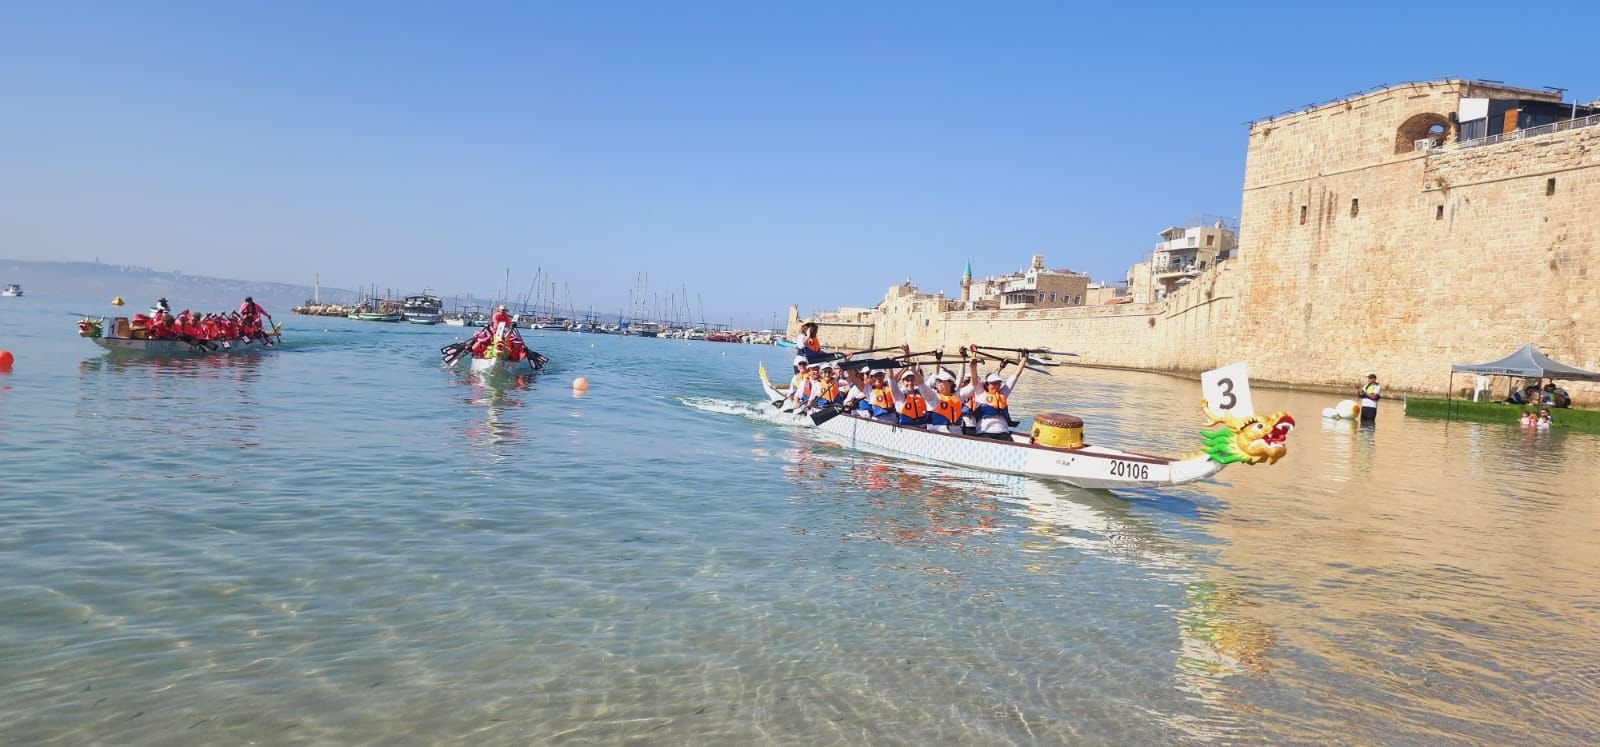 بطولة البلاد ومهرجان قوارب الدراغون بأجمل حلة على شاطئ العرب في عكا-5